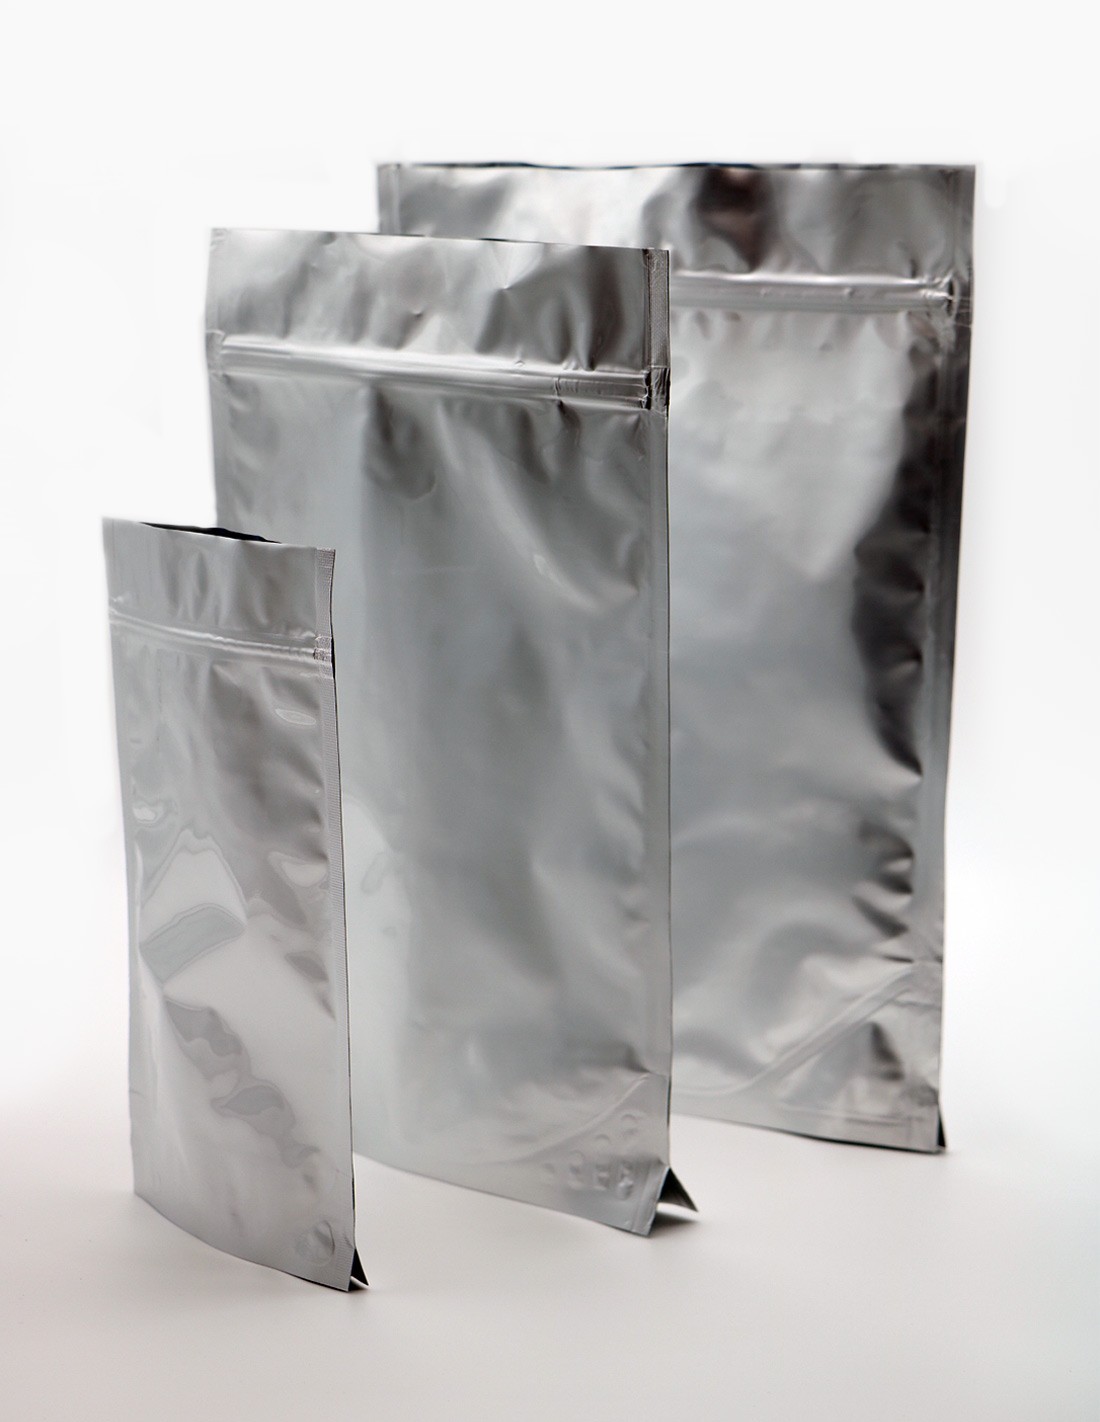 42 sacs coulissants Ziploc - sachet plastique à fermeture zip